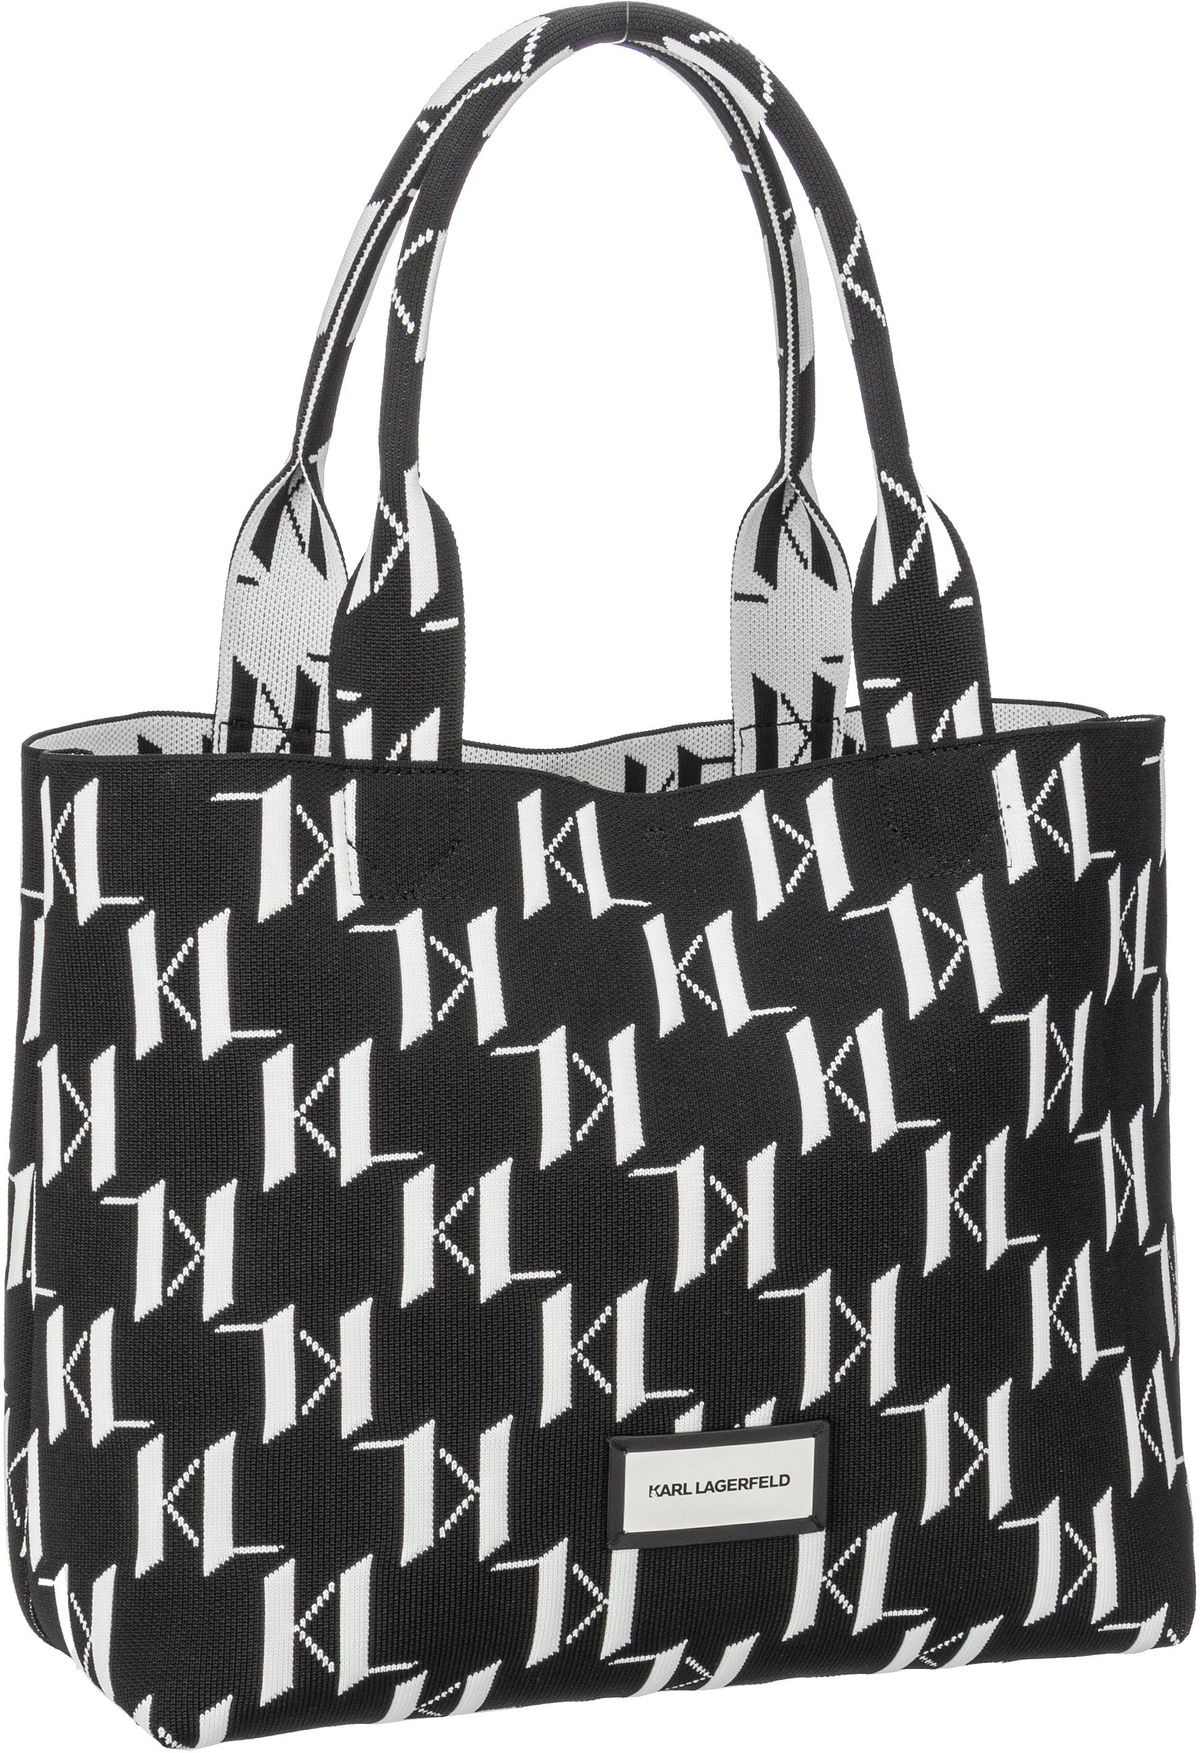 Karl Lagerfeld K/Monogram Knit LG 241W3032  in Black/White (18.7 Liter), Shopper